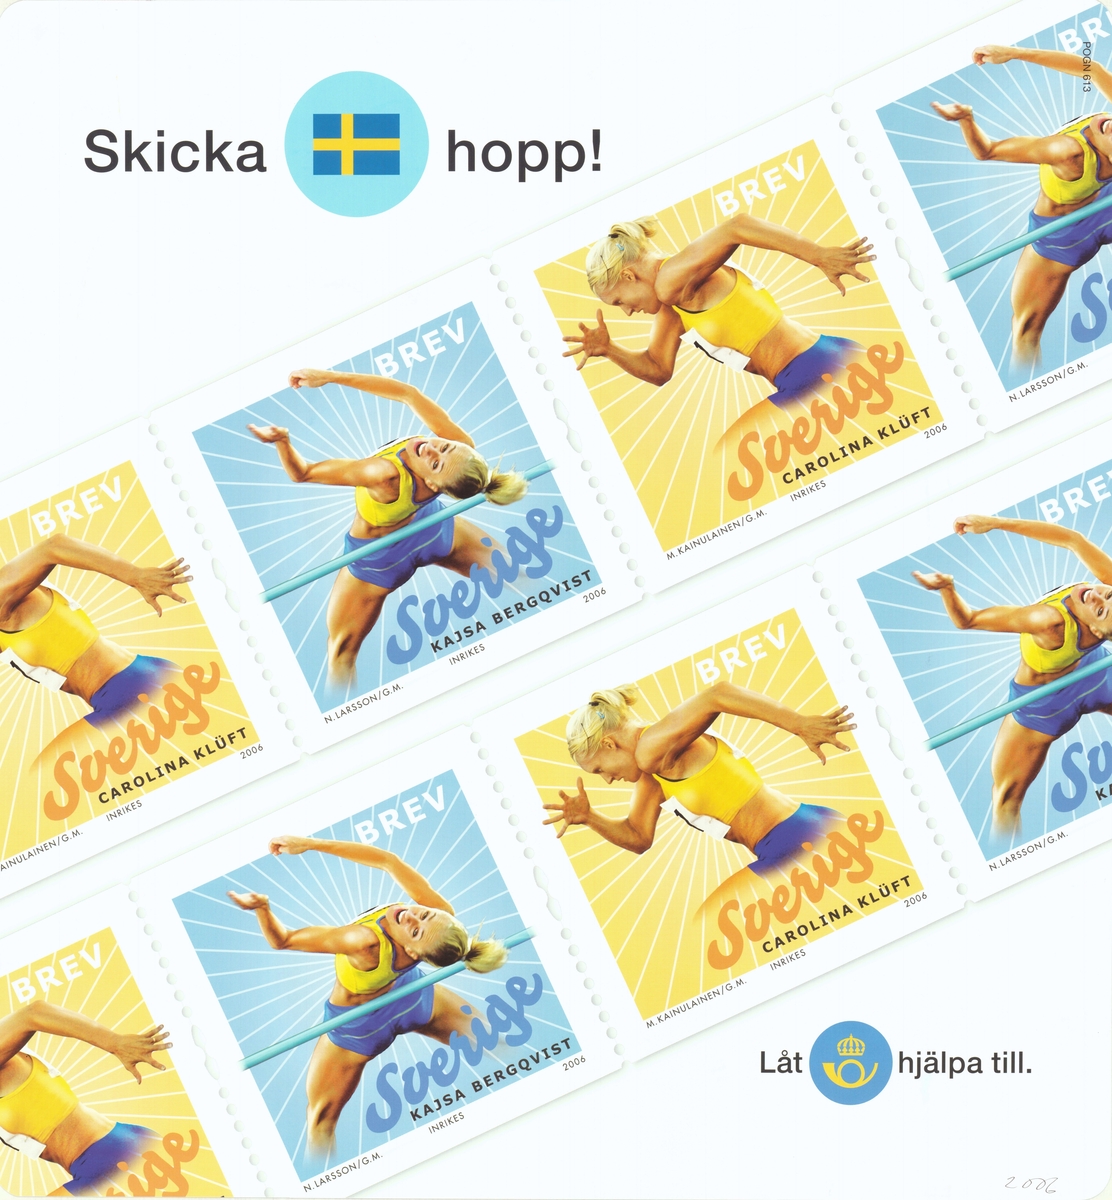 Postens frimärken med Carolina Klüft och Kajsa Bergqvist. 

Postens ikonspråk.